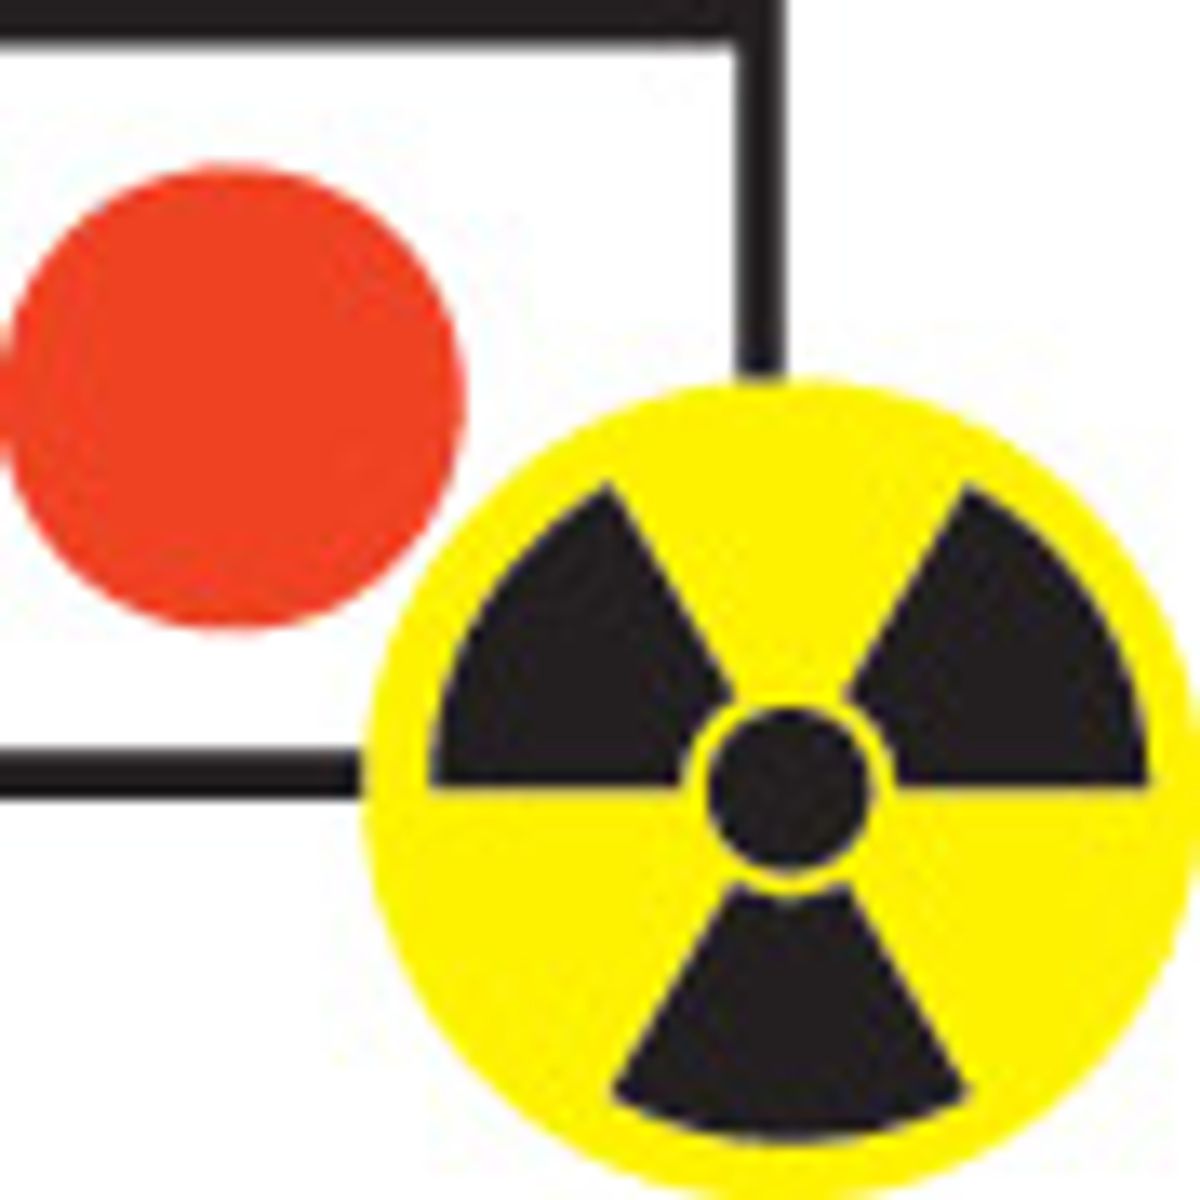 Fukushima Accident Upgraded to Severity Level 7